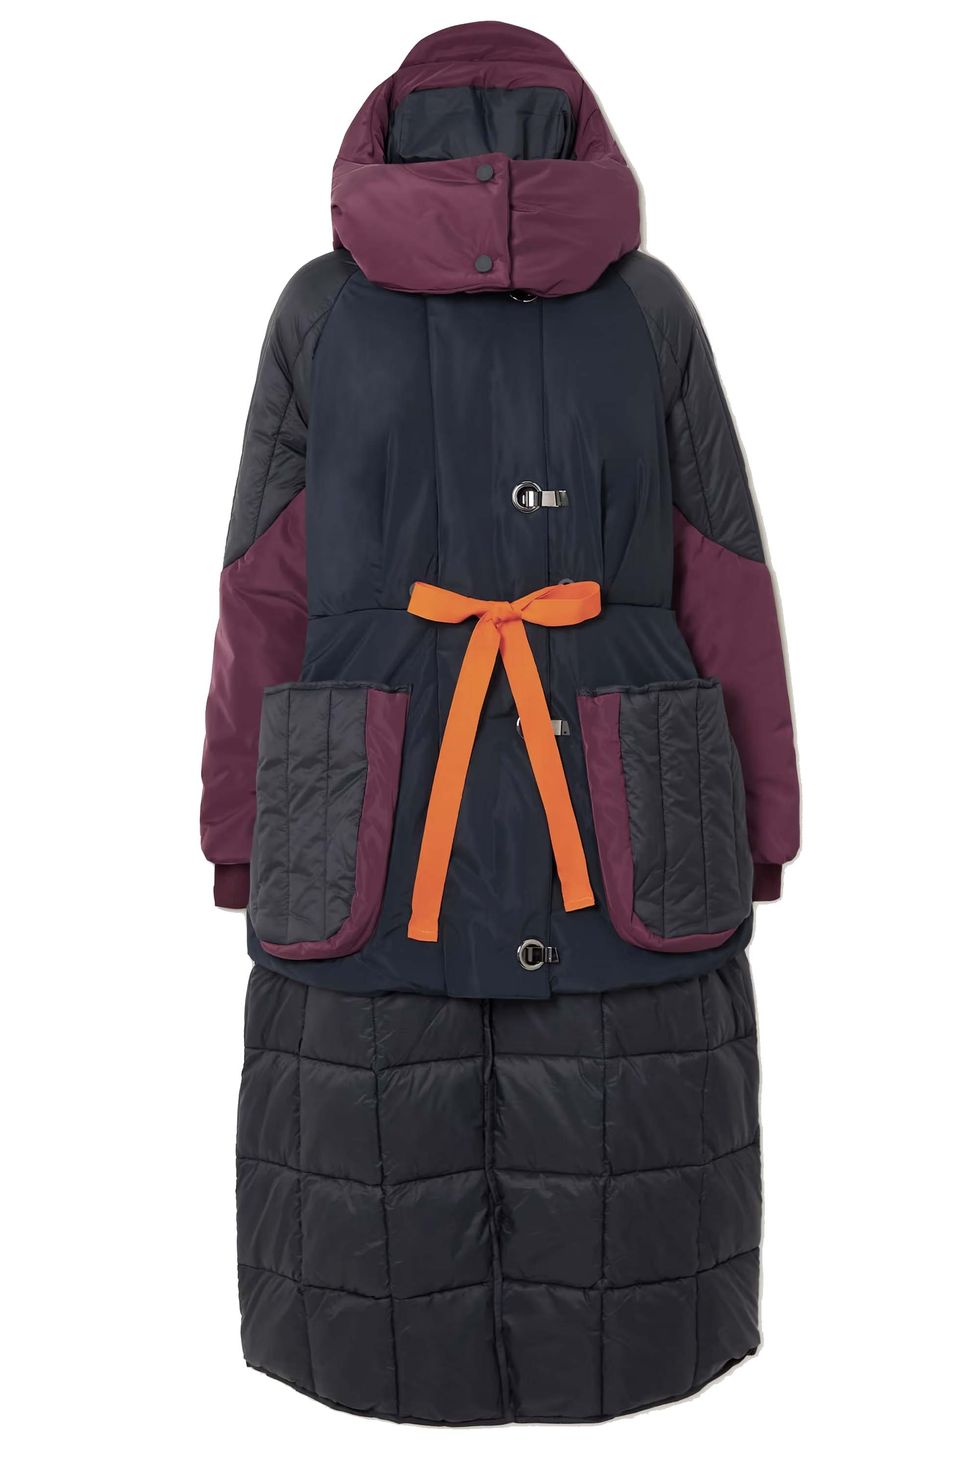 Пальто, пуховики и куртки, которые мы особо хотим видеть в своем гардеробе этой зимой